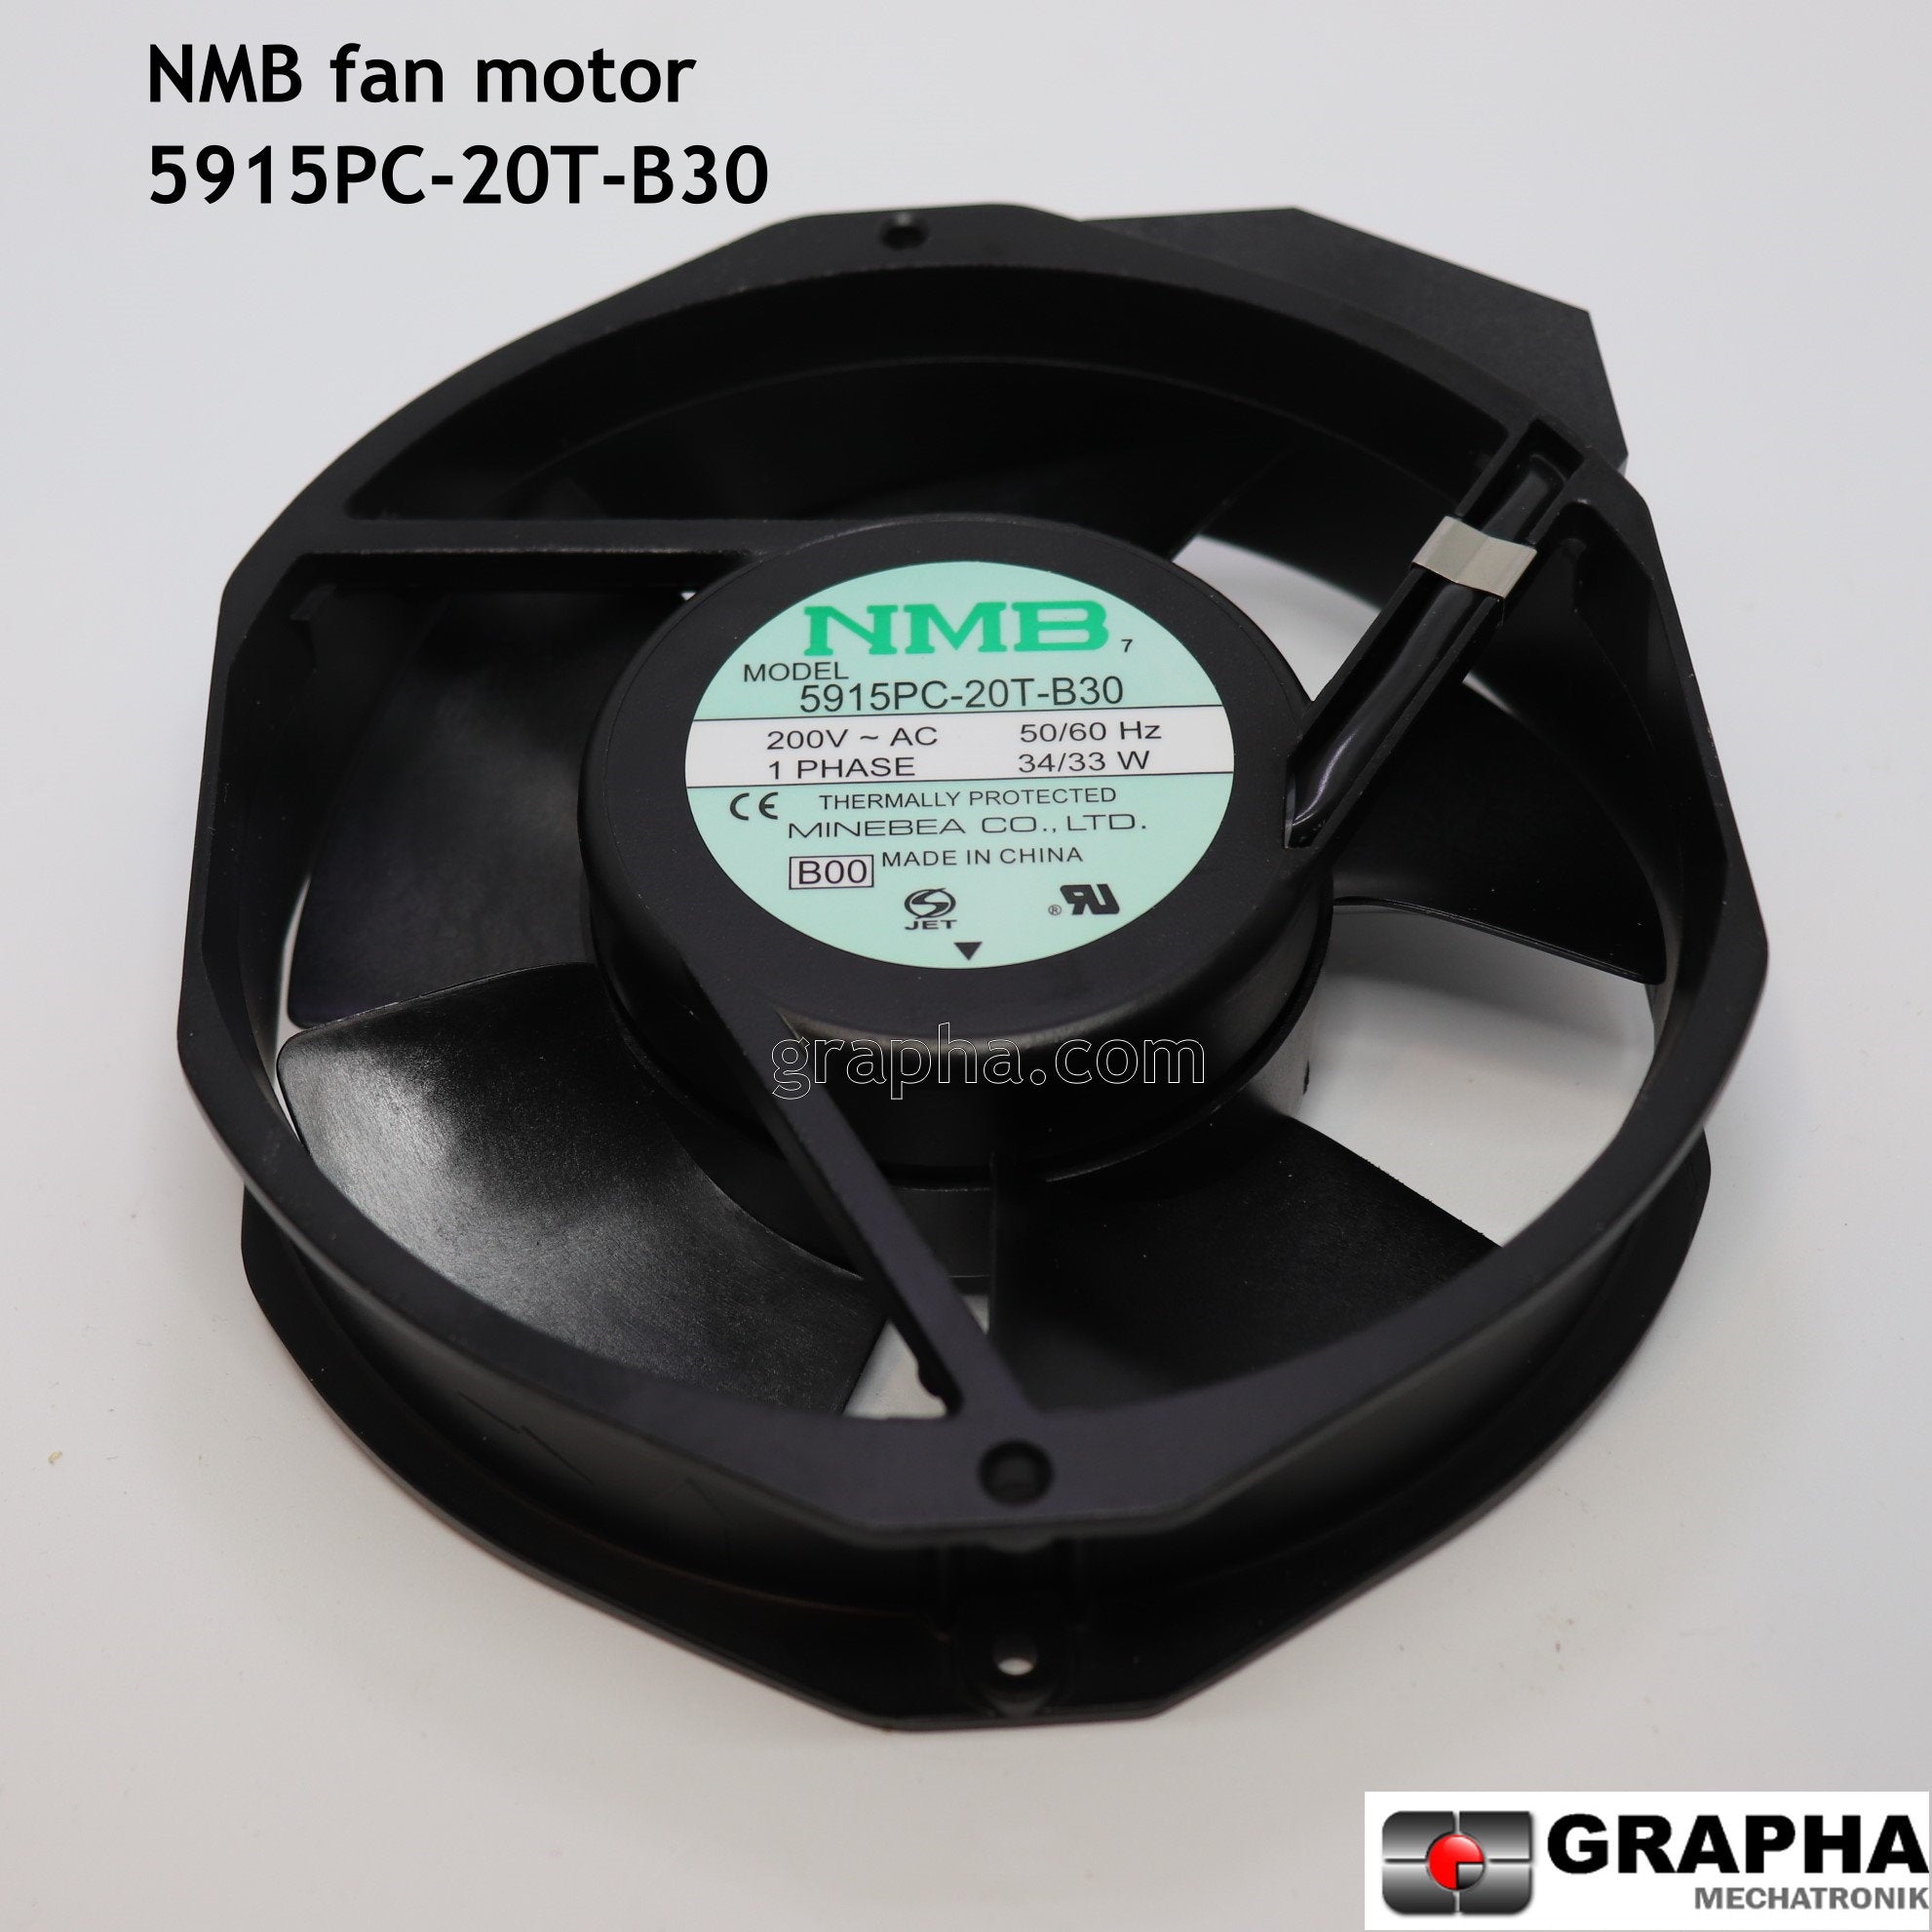 NMB fan motor: 5915PC-20T-B30